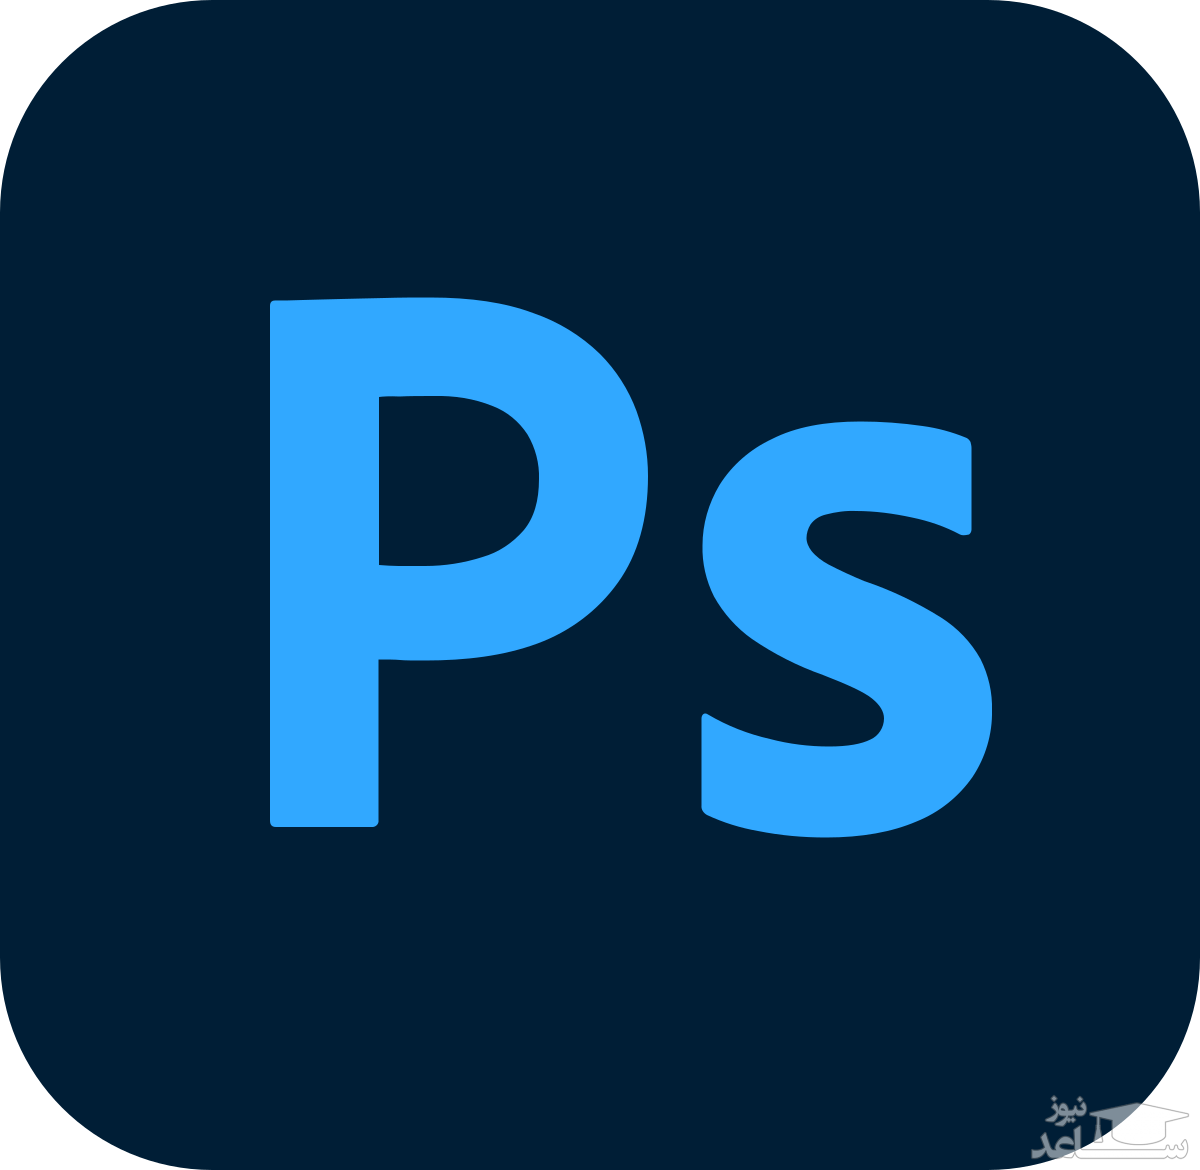 آموزش طراحی لوگو در نرم افزار Adobe Photoshop